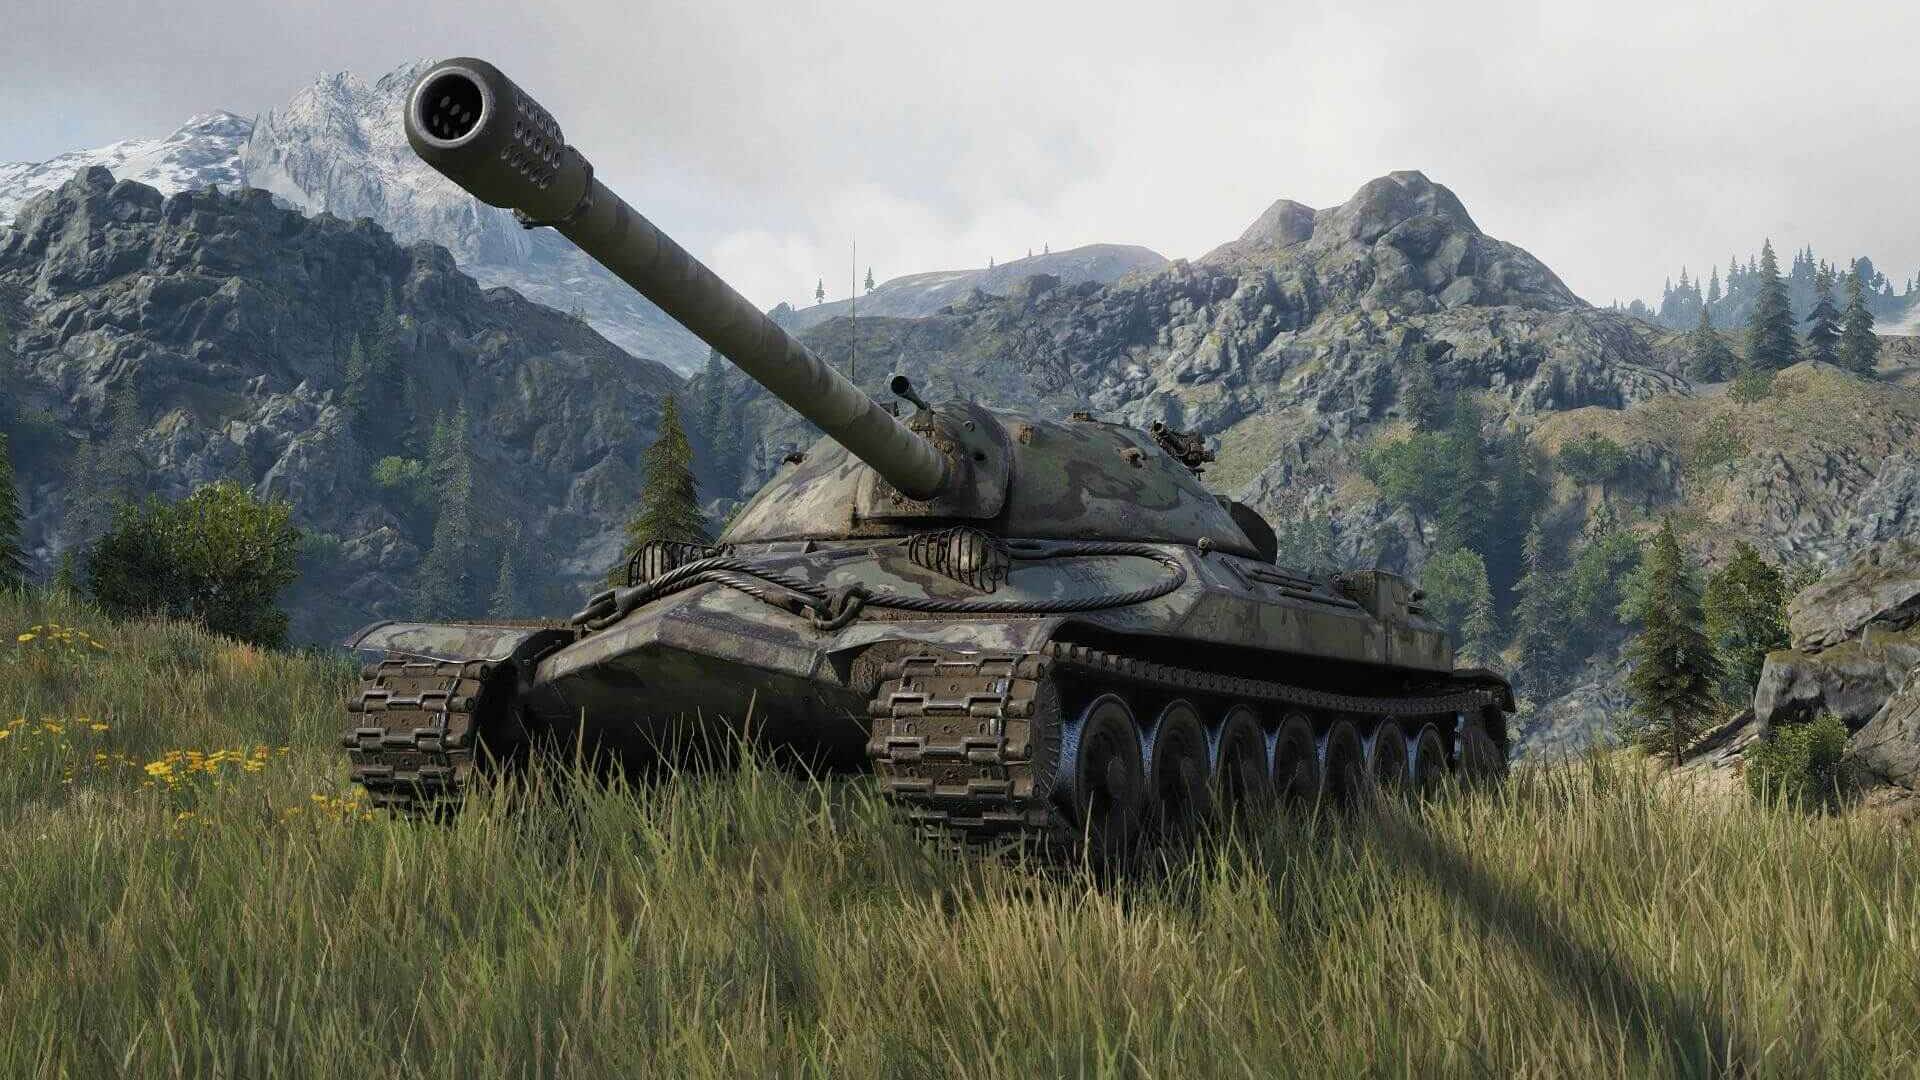 Тестовые world of tanks